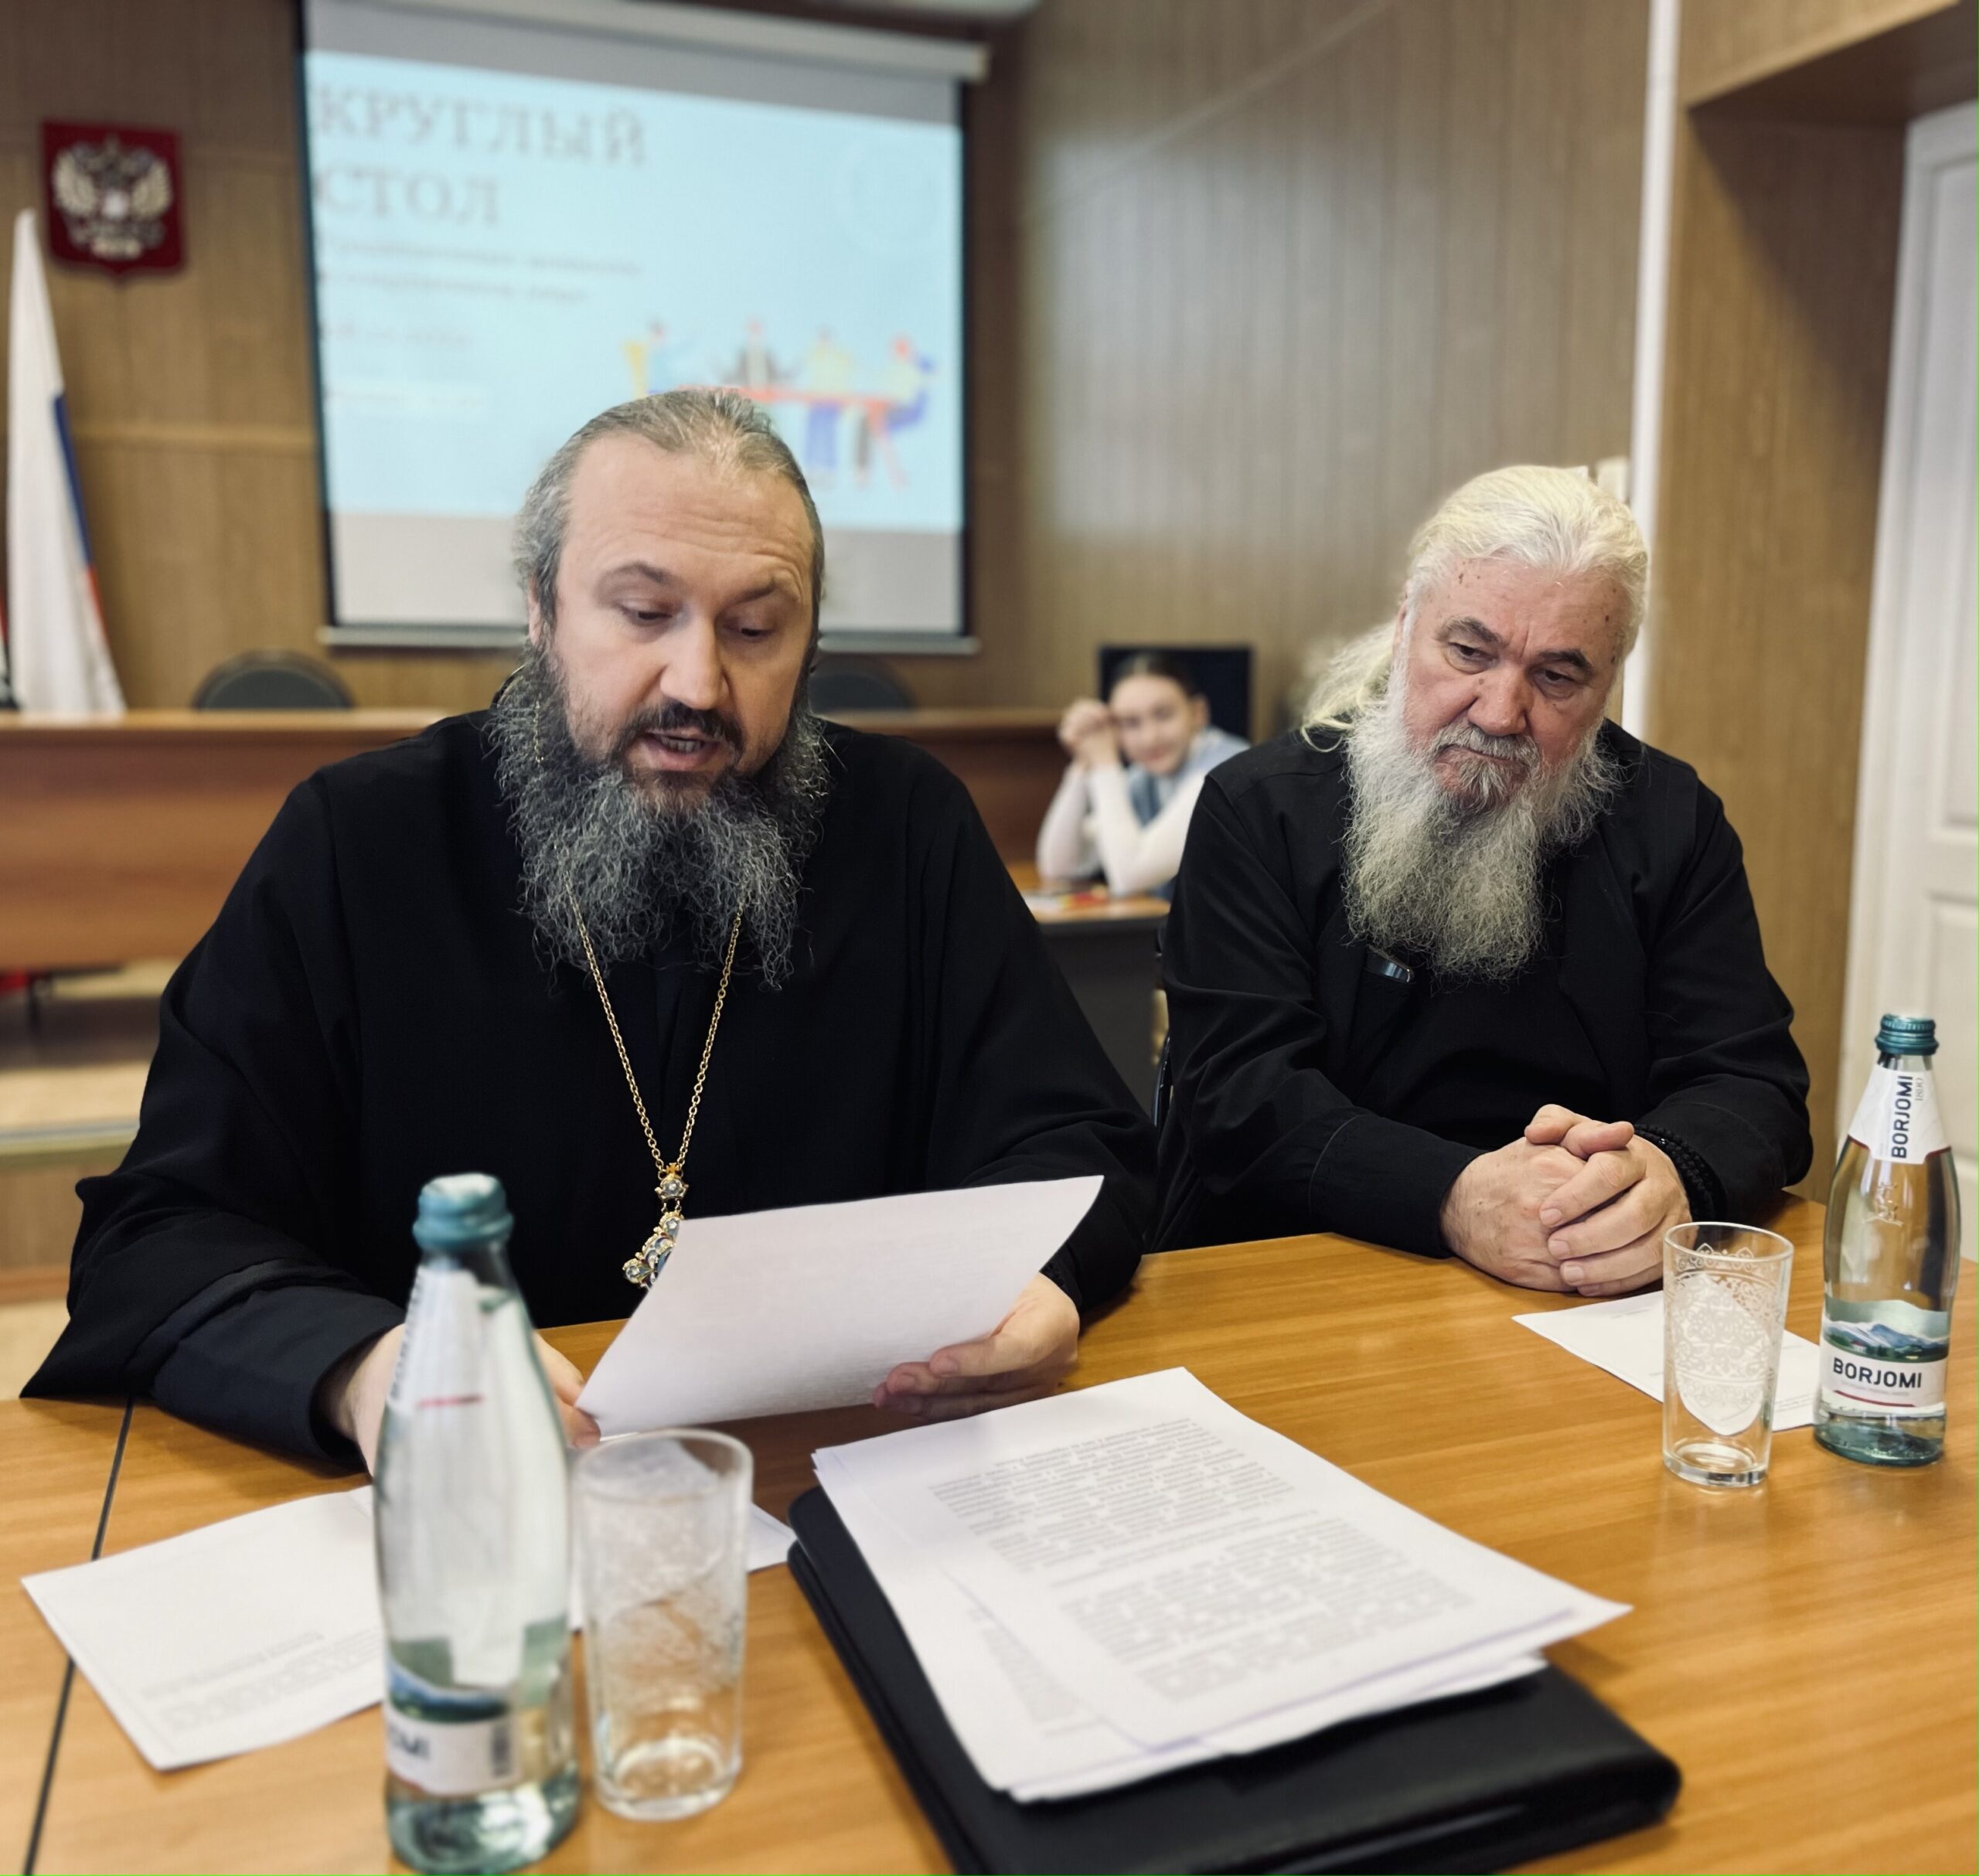 Епископ Варфоломей принял участие в работе круглого стола в Балаковском филиале СГЮА